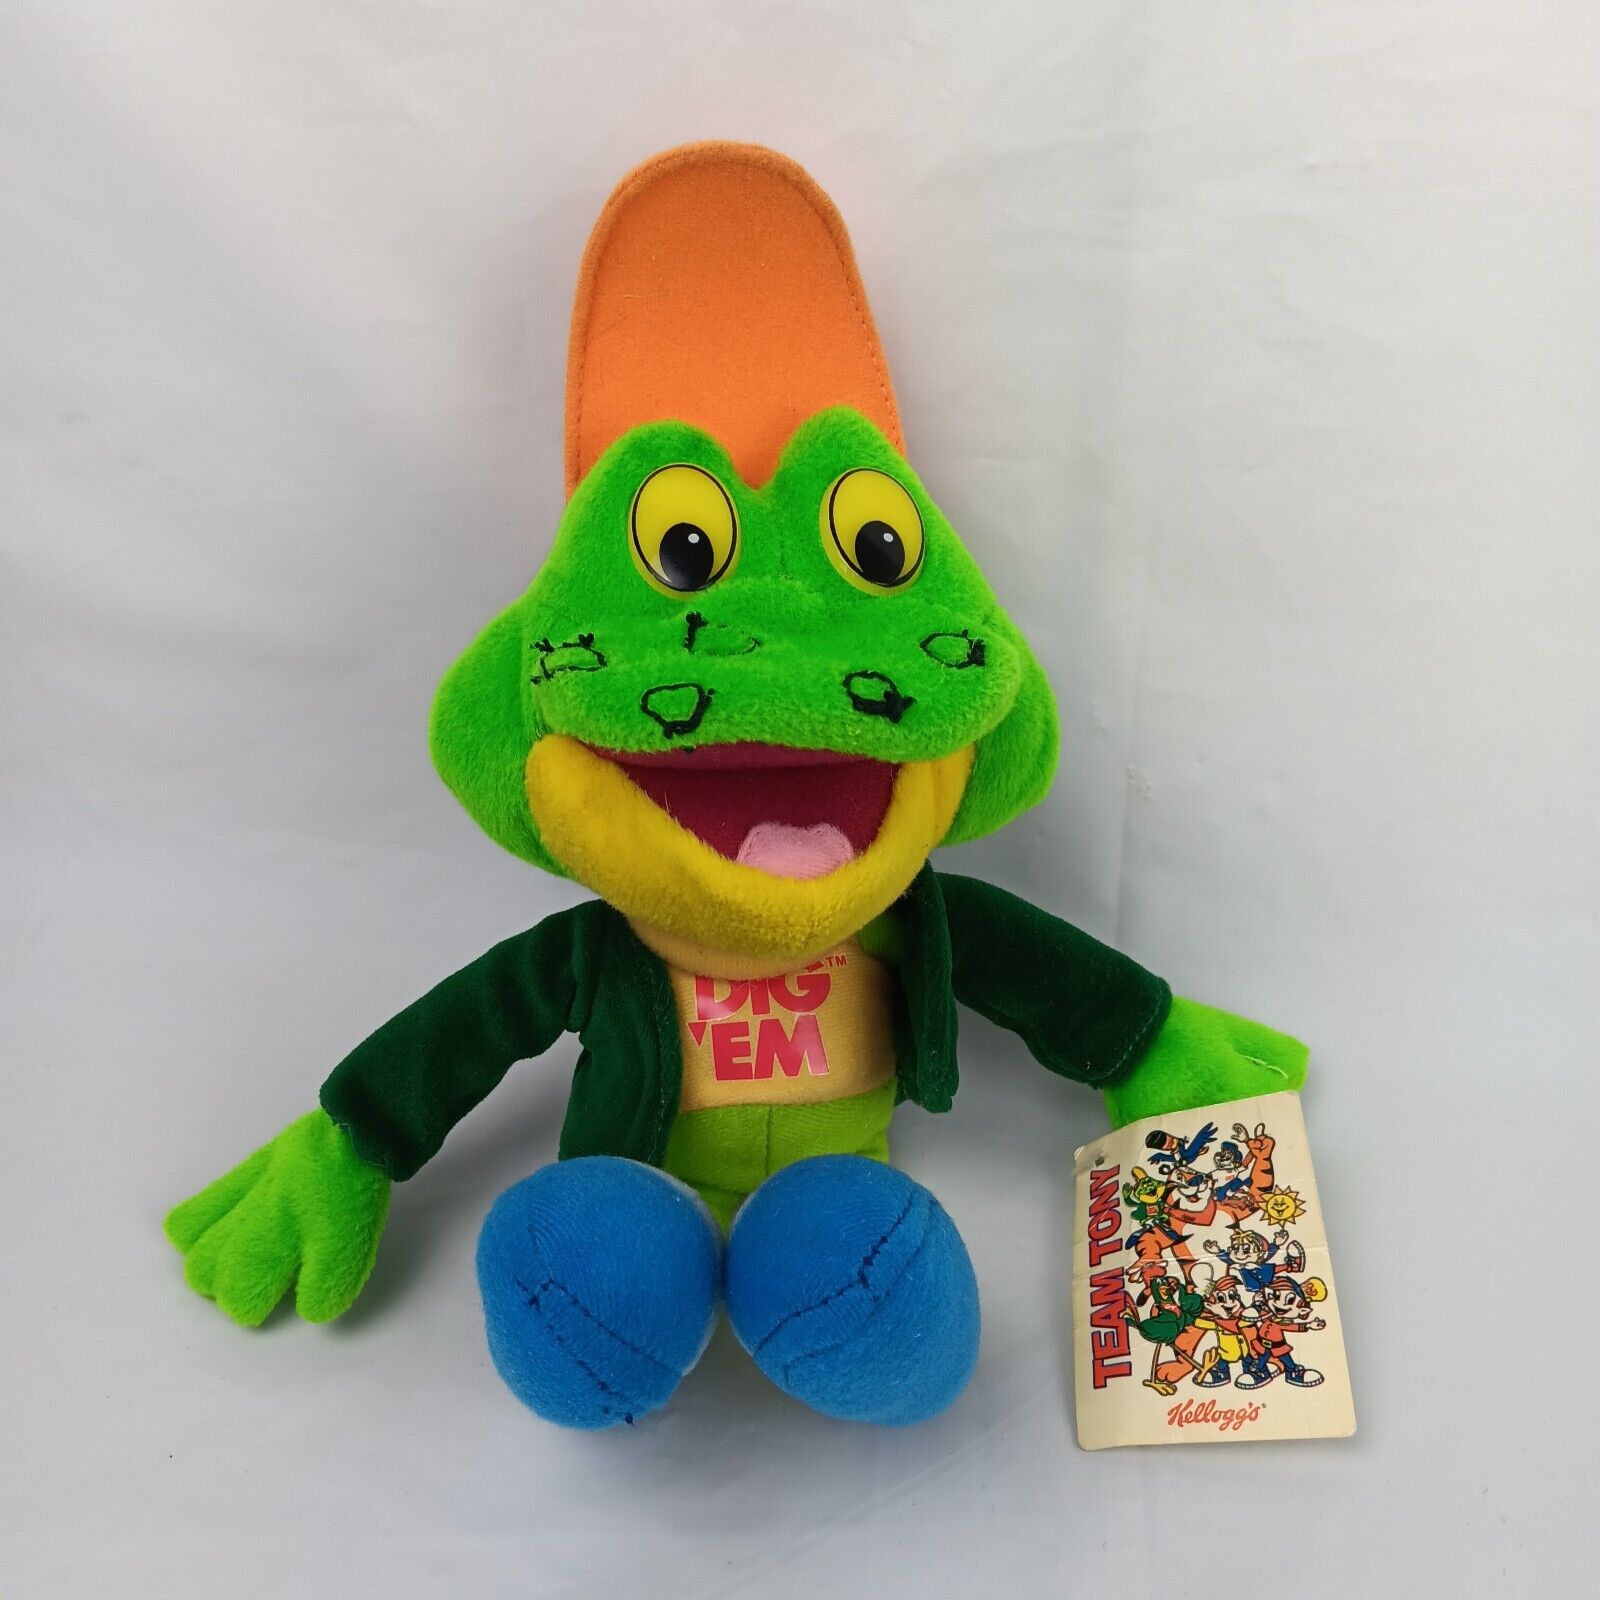 Vintage 2001 Toy Network Kellogg's Honey Smacks Cereal Dig Em Frog Plush Toy